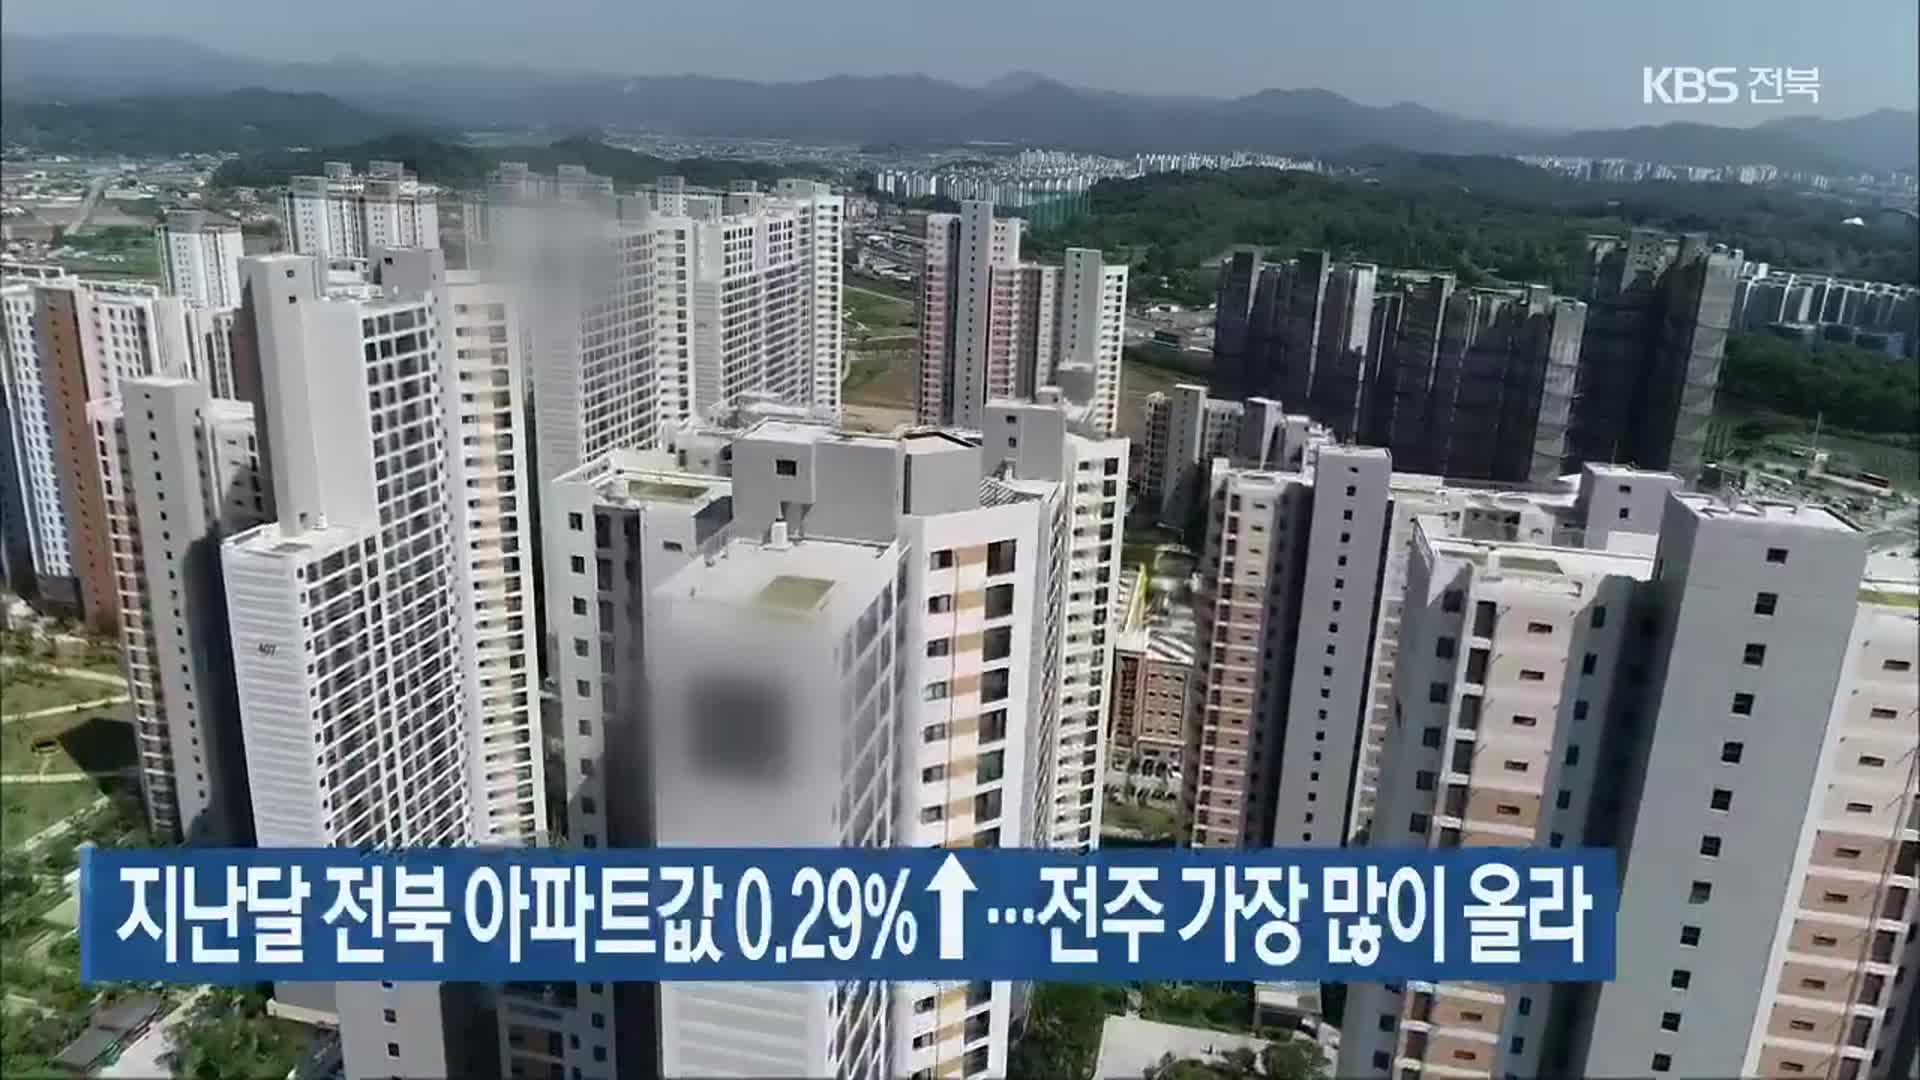 지난달 전북 아파트값 0.29%↑…전주 가장 많이 올라